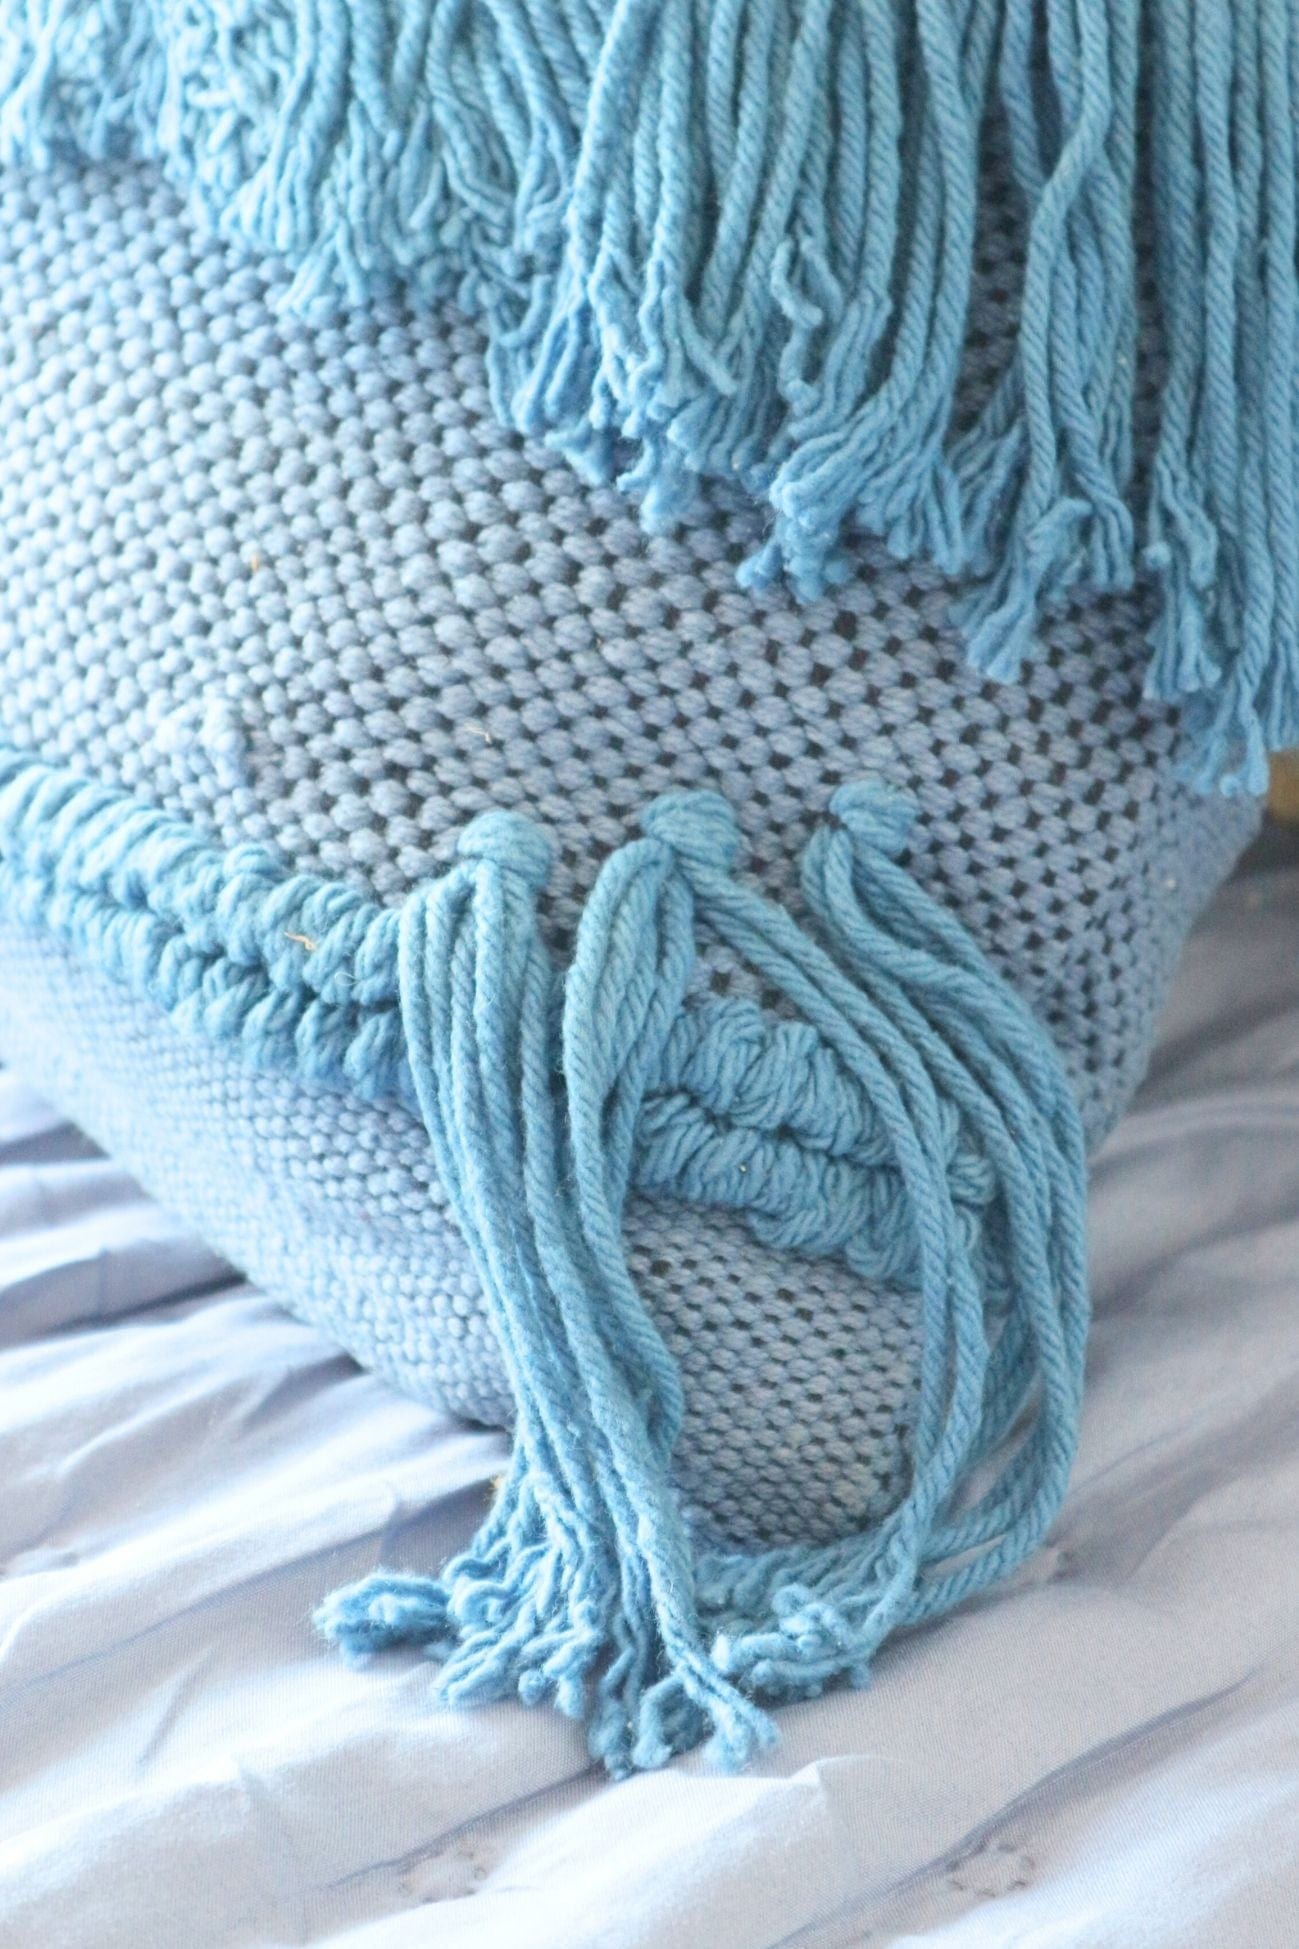 Luxe Lodge Rebi Rebi - Cuscino arredo blu imbottito in cotone con frange in stile boho | Luxe Lodge